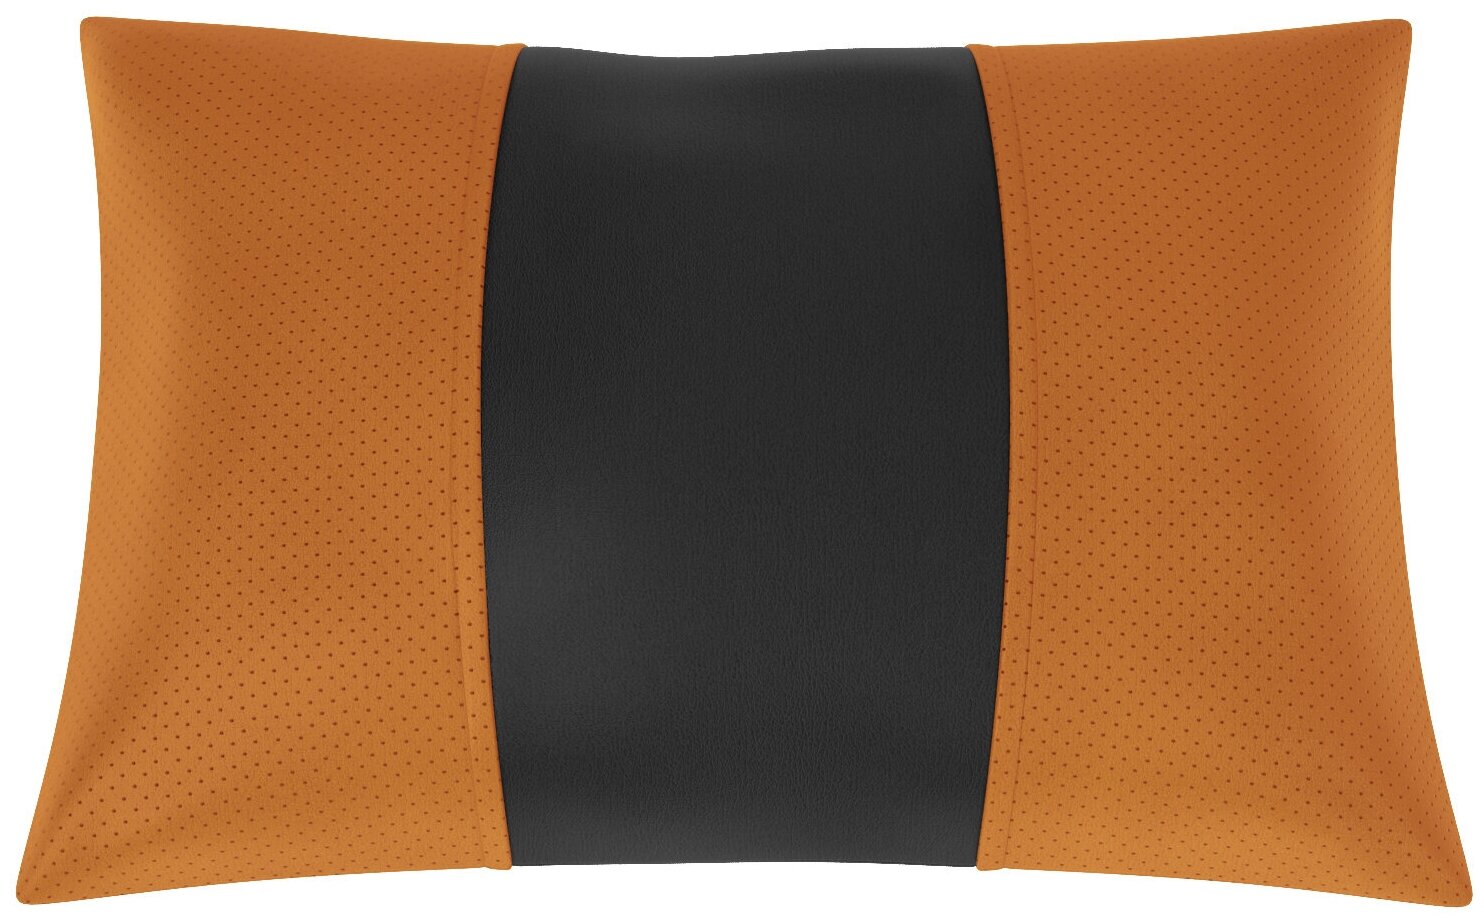 Автомобильная подушка для Citroen Berlingo 1. Экокожа. Середина: чёрная гладкая экокожа. Боковины: оранжевая экокожа с перфорацией. 1 шт.